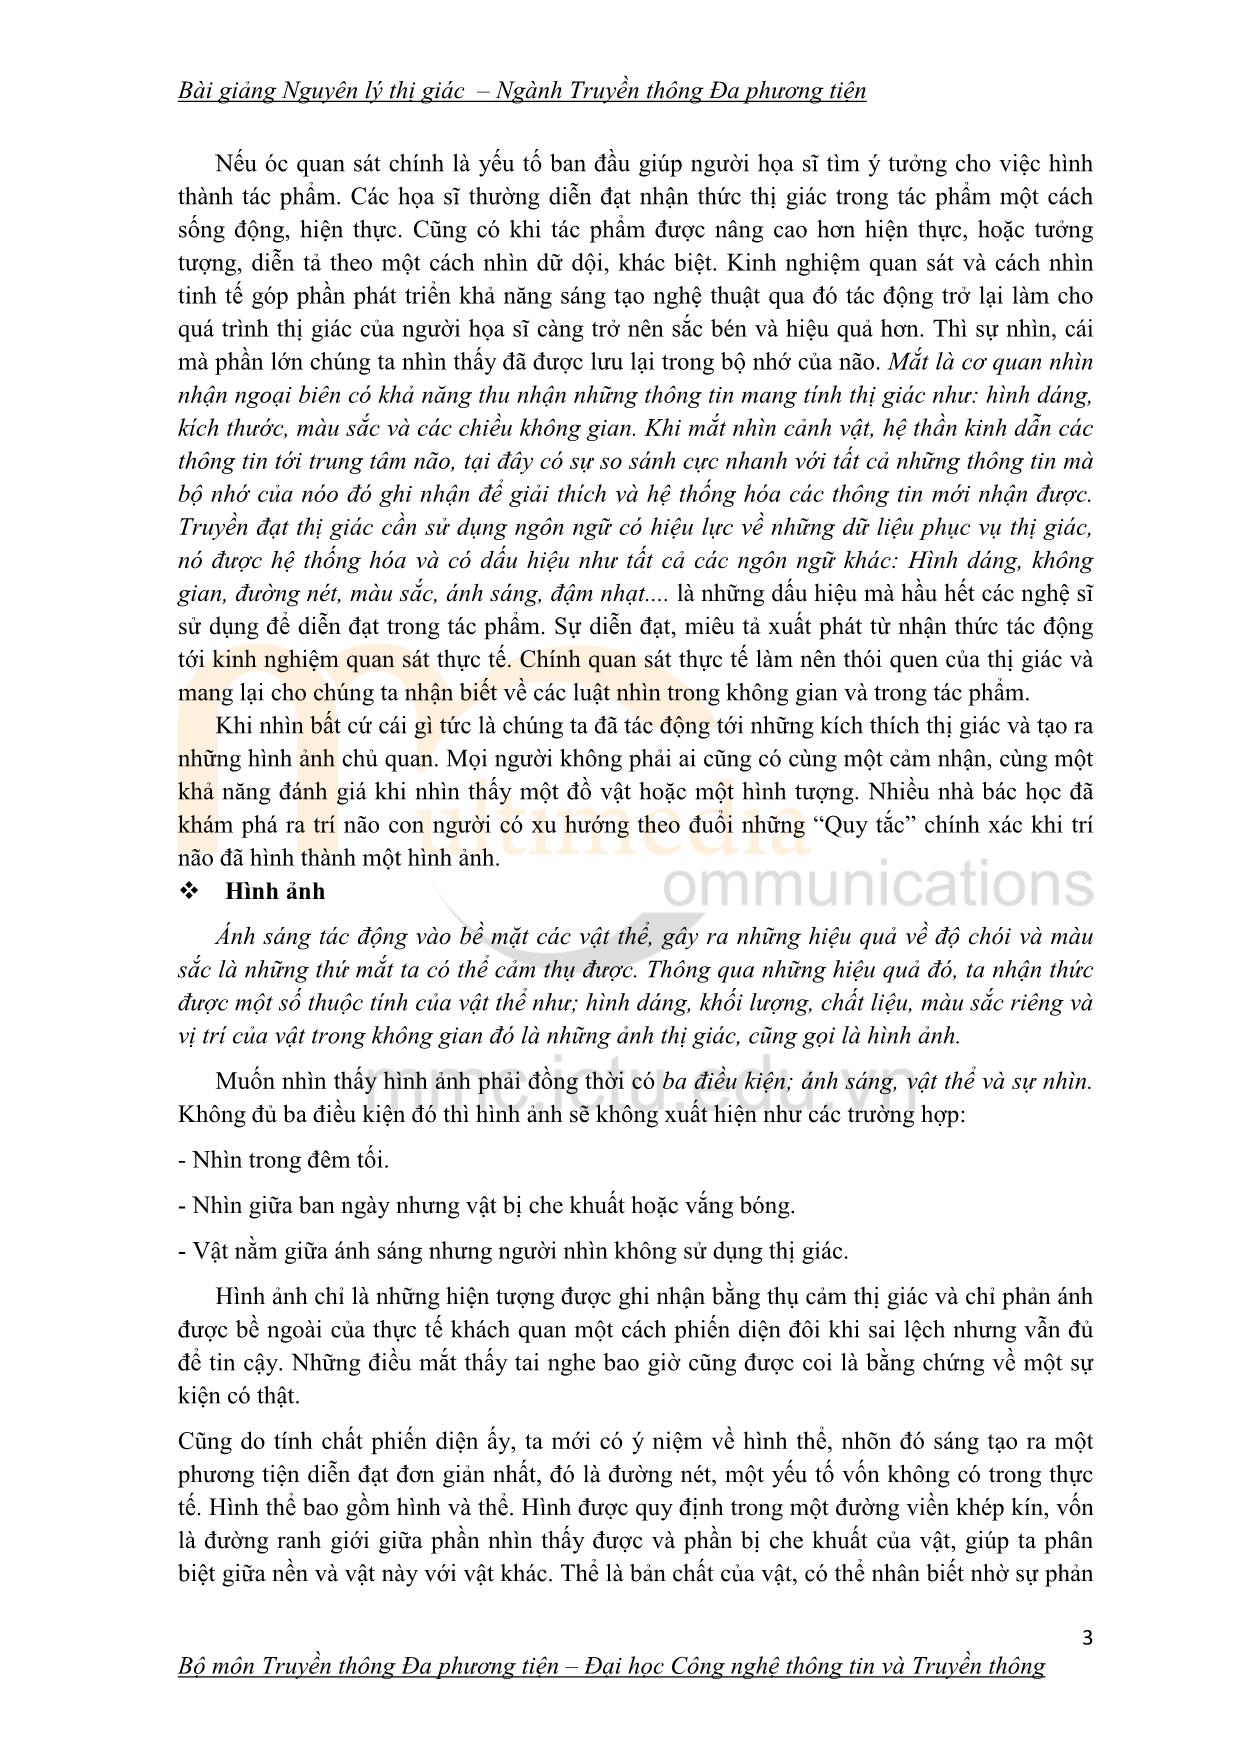 Giáo trình Nguyên lý thị giác (Phần 1) trang 3